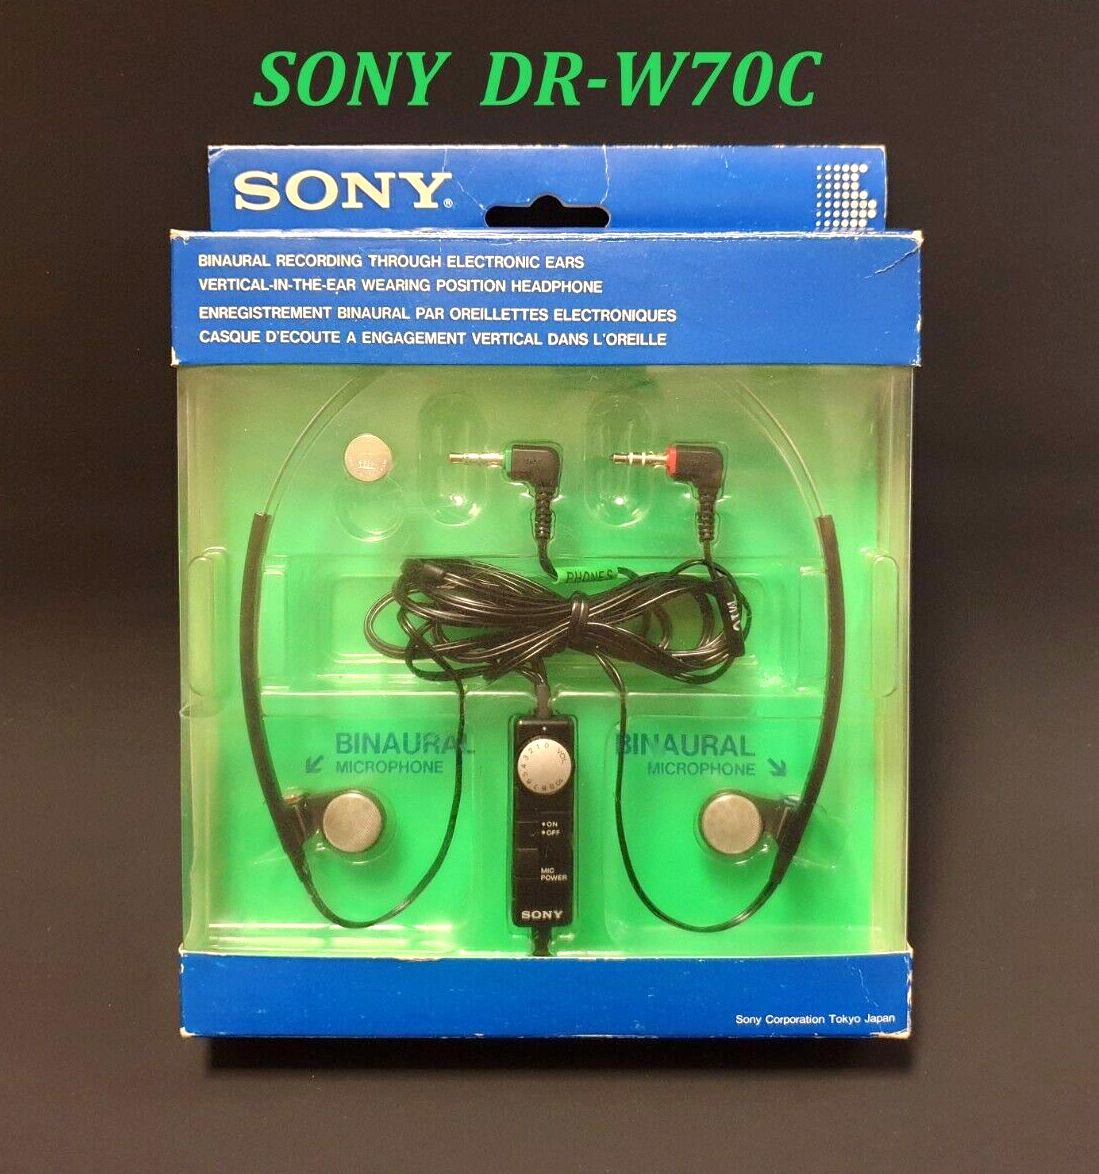 Sony DR-W 70 C-Prospekt-1991.jpg